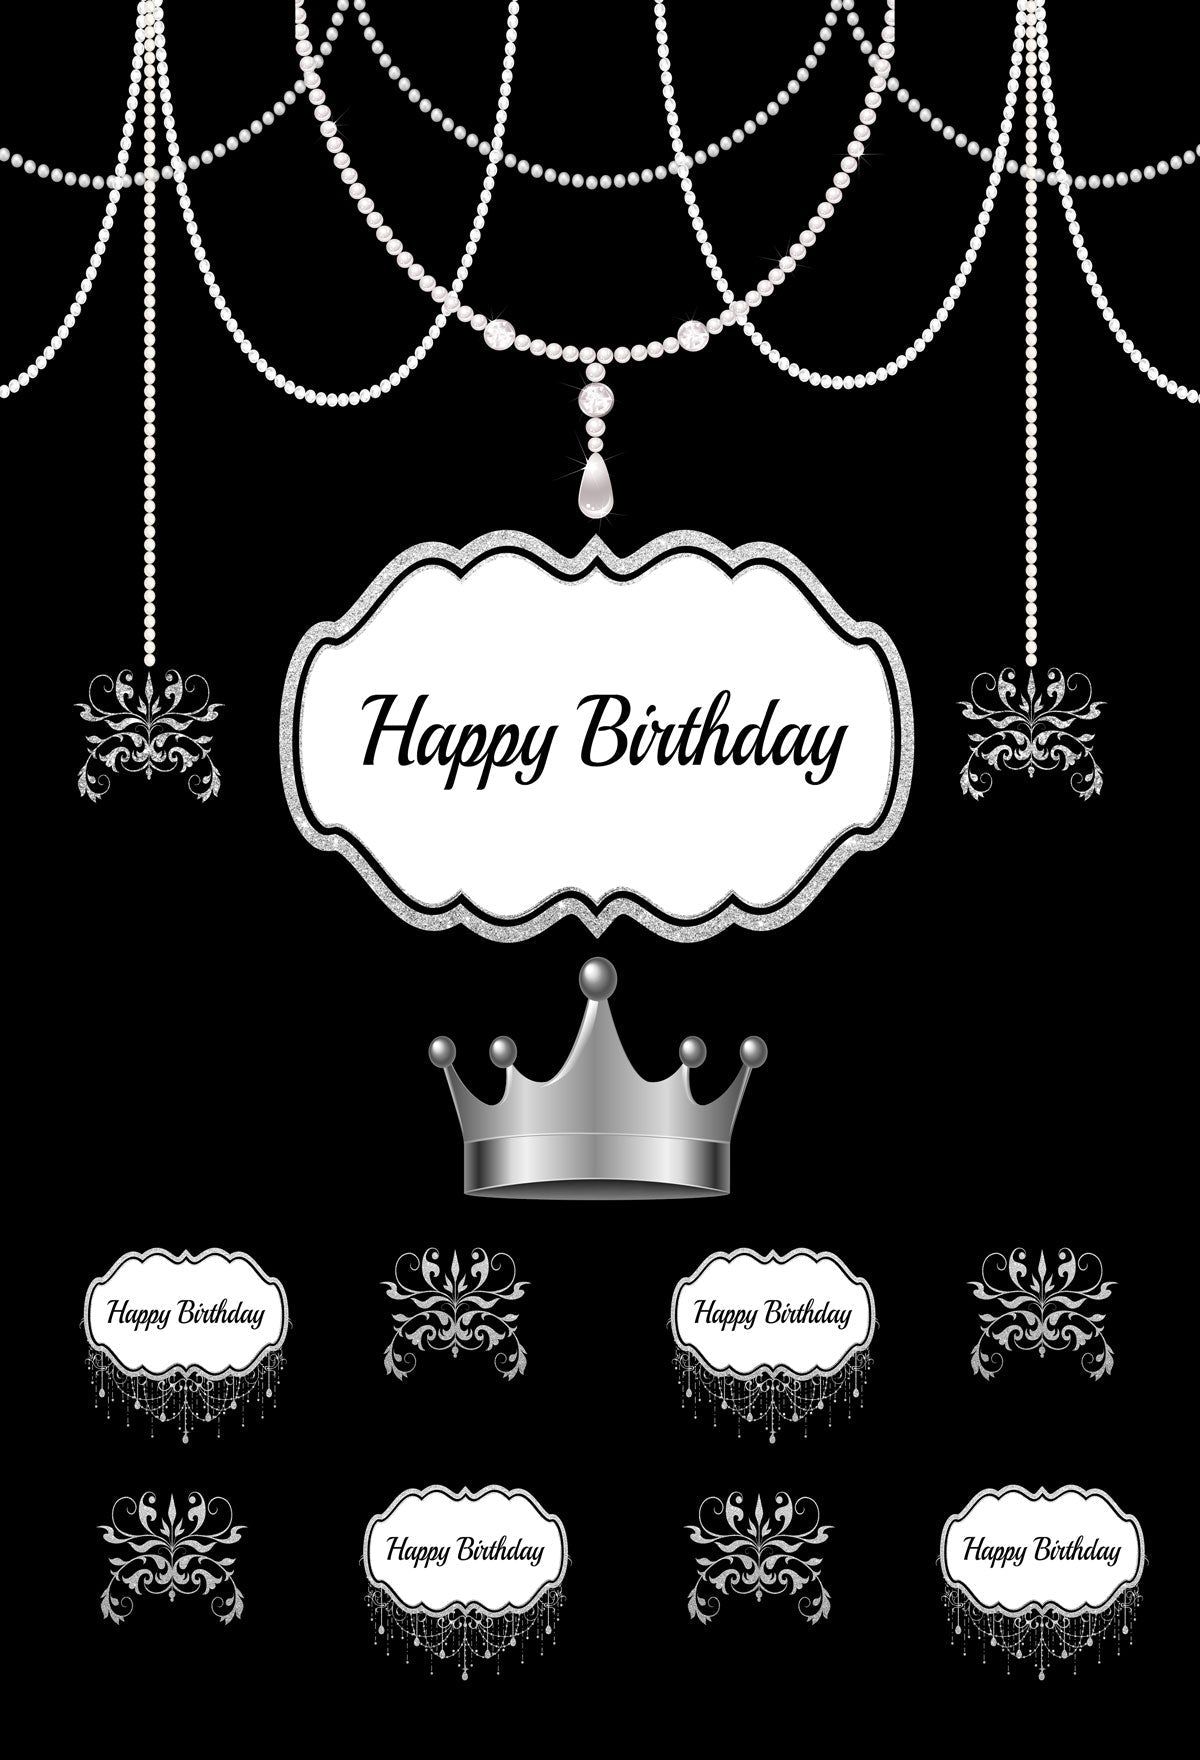 Kate Geburtstags-Party-schwarzer Hintergrund mit silberner Krone für Geburtstagsfeier Angepasst - Katebackdrop.de